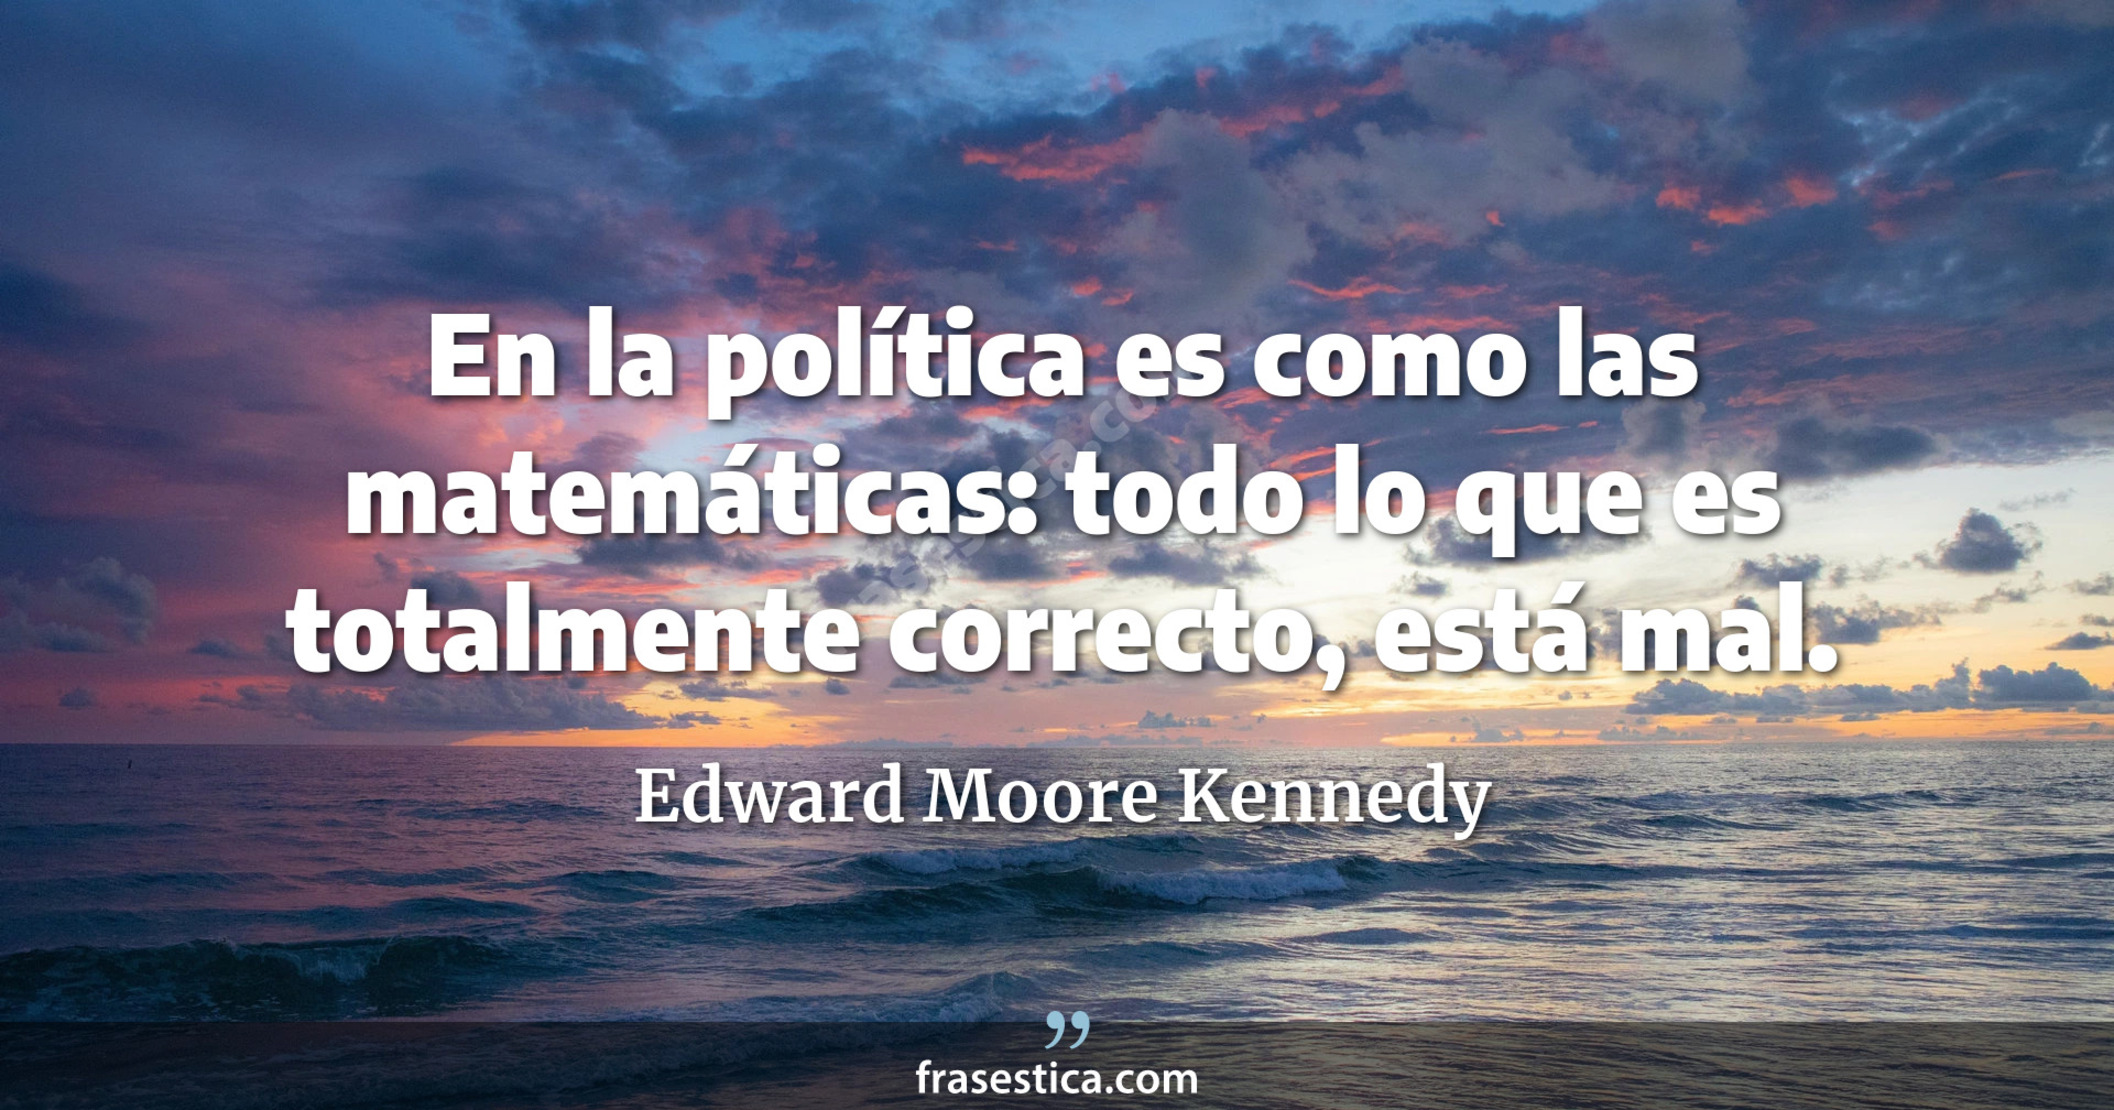 En la política es como las matemáticas: todo lo que es totalmente correcto, está mal. - Edward Moore Kennedy